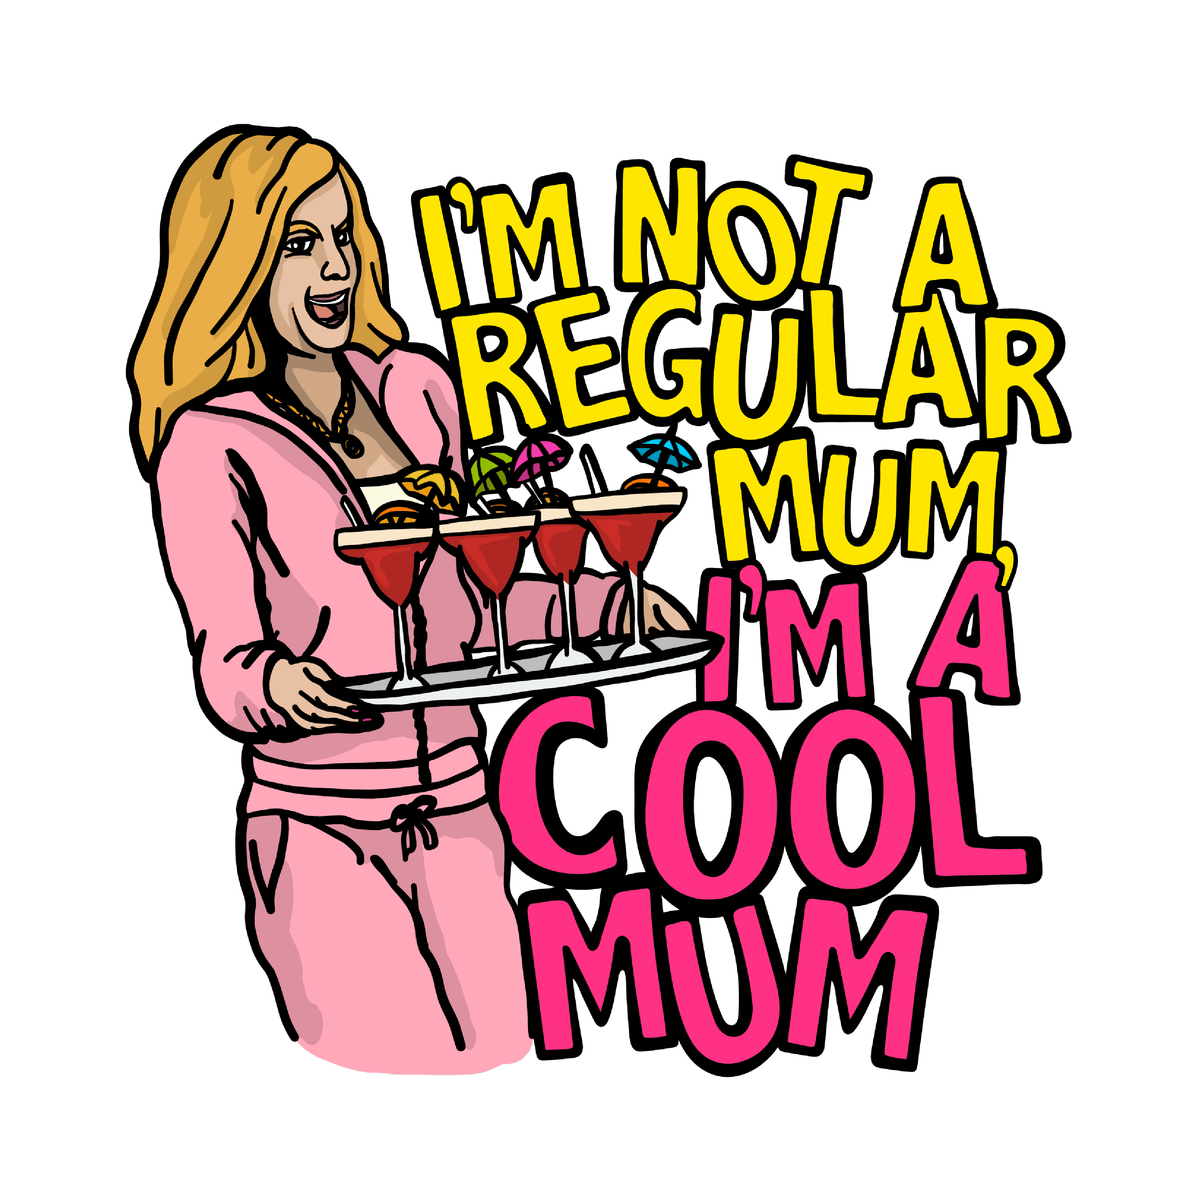 Cool Mum 😎🍸 - Women's T Shirt